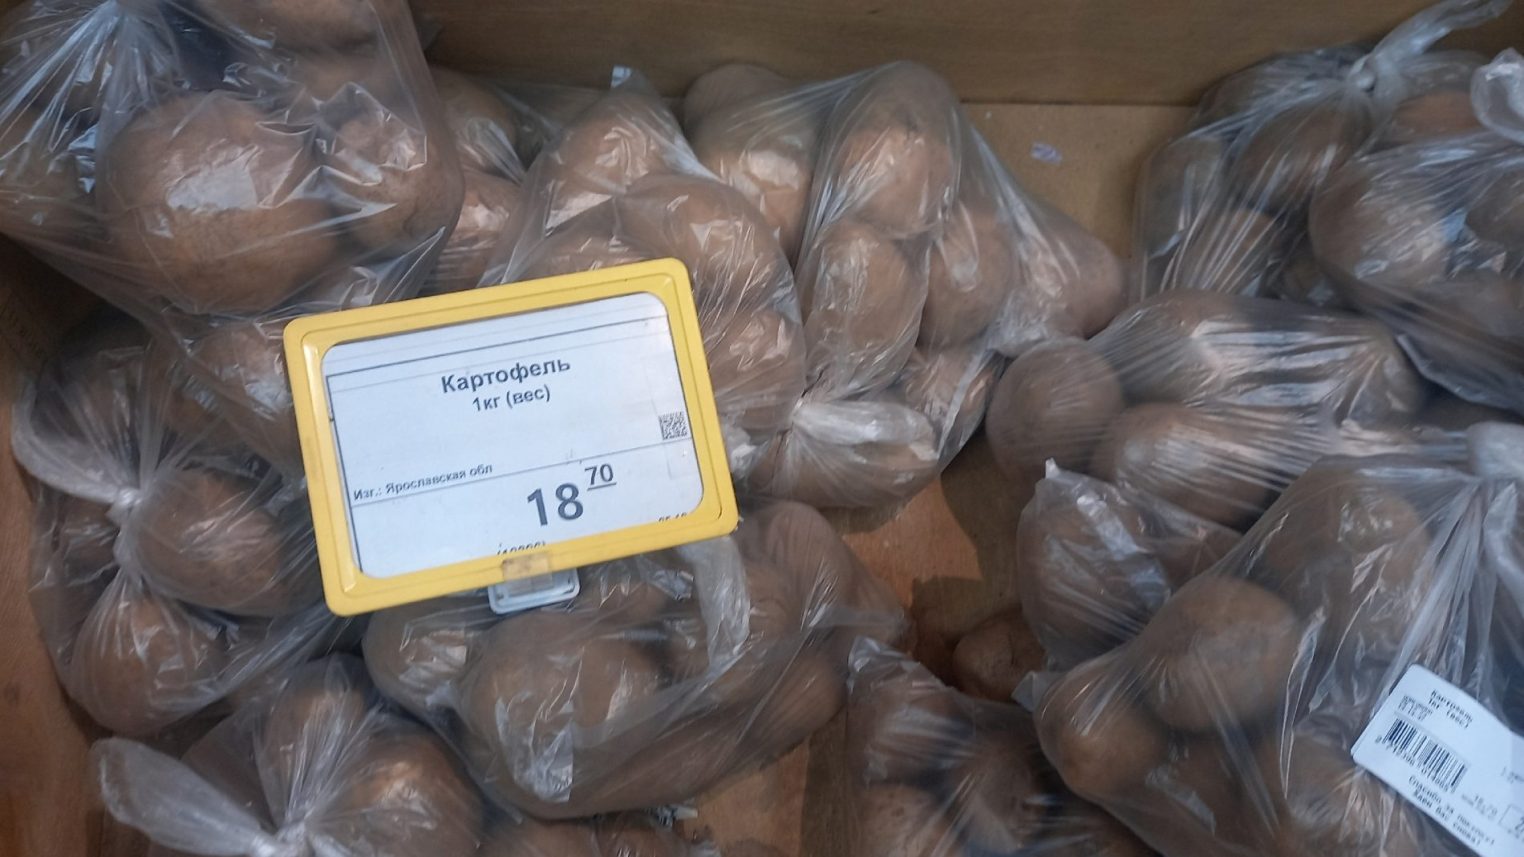 Огурцы и помидоры в костромских магазинах стоят дороже свинины